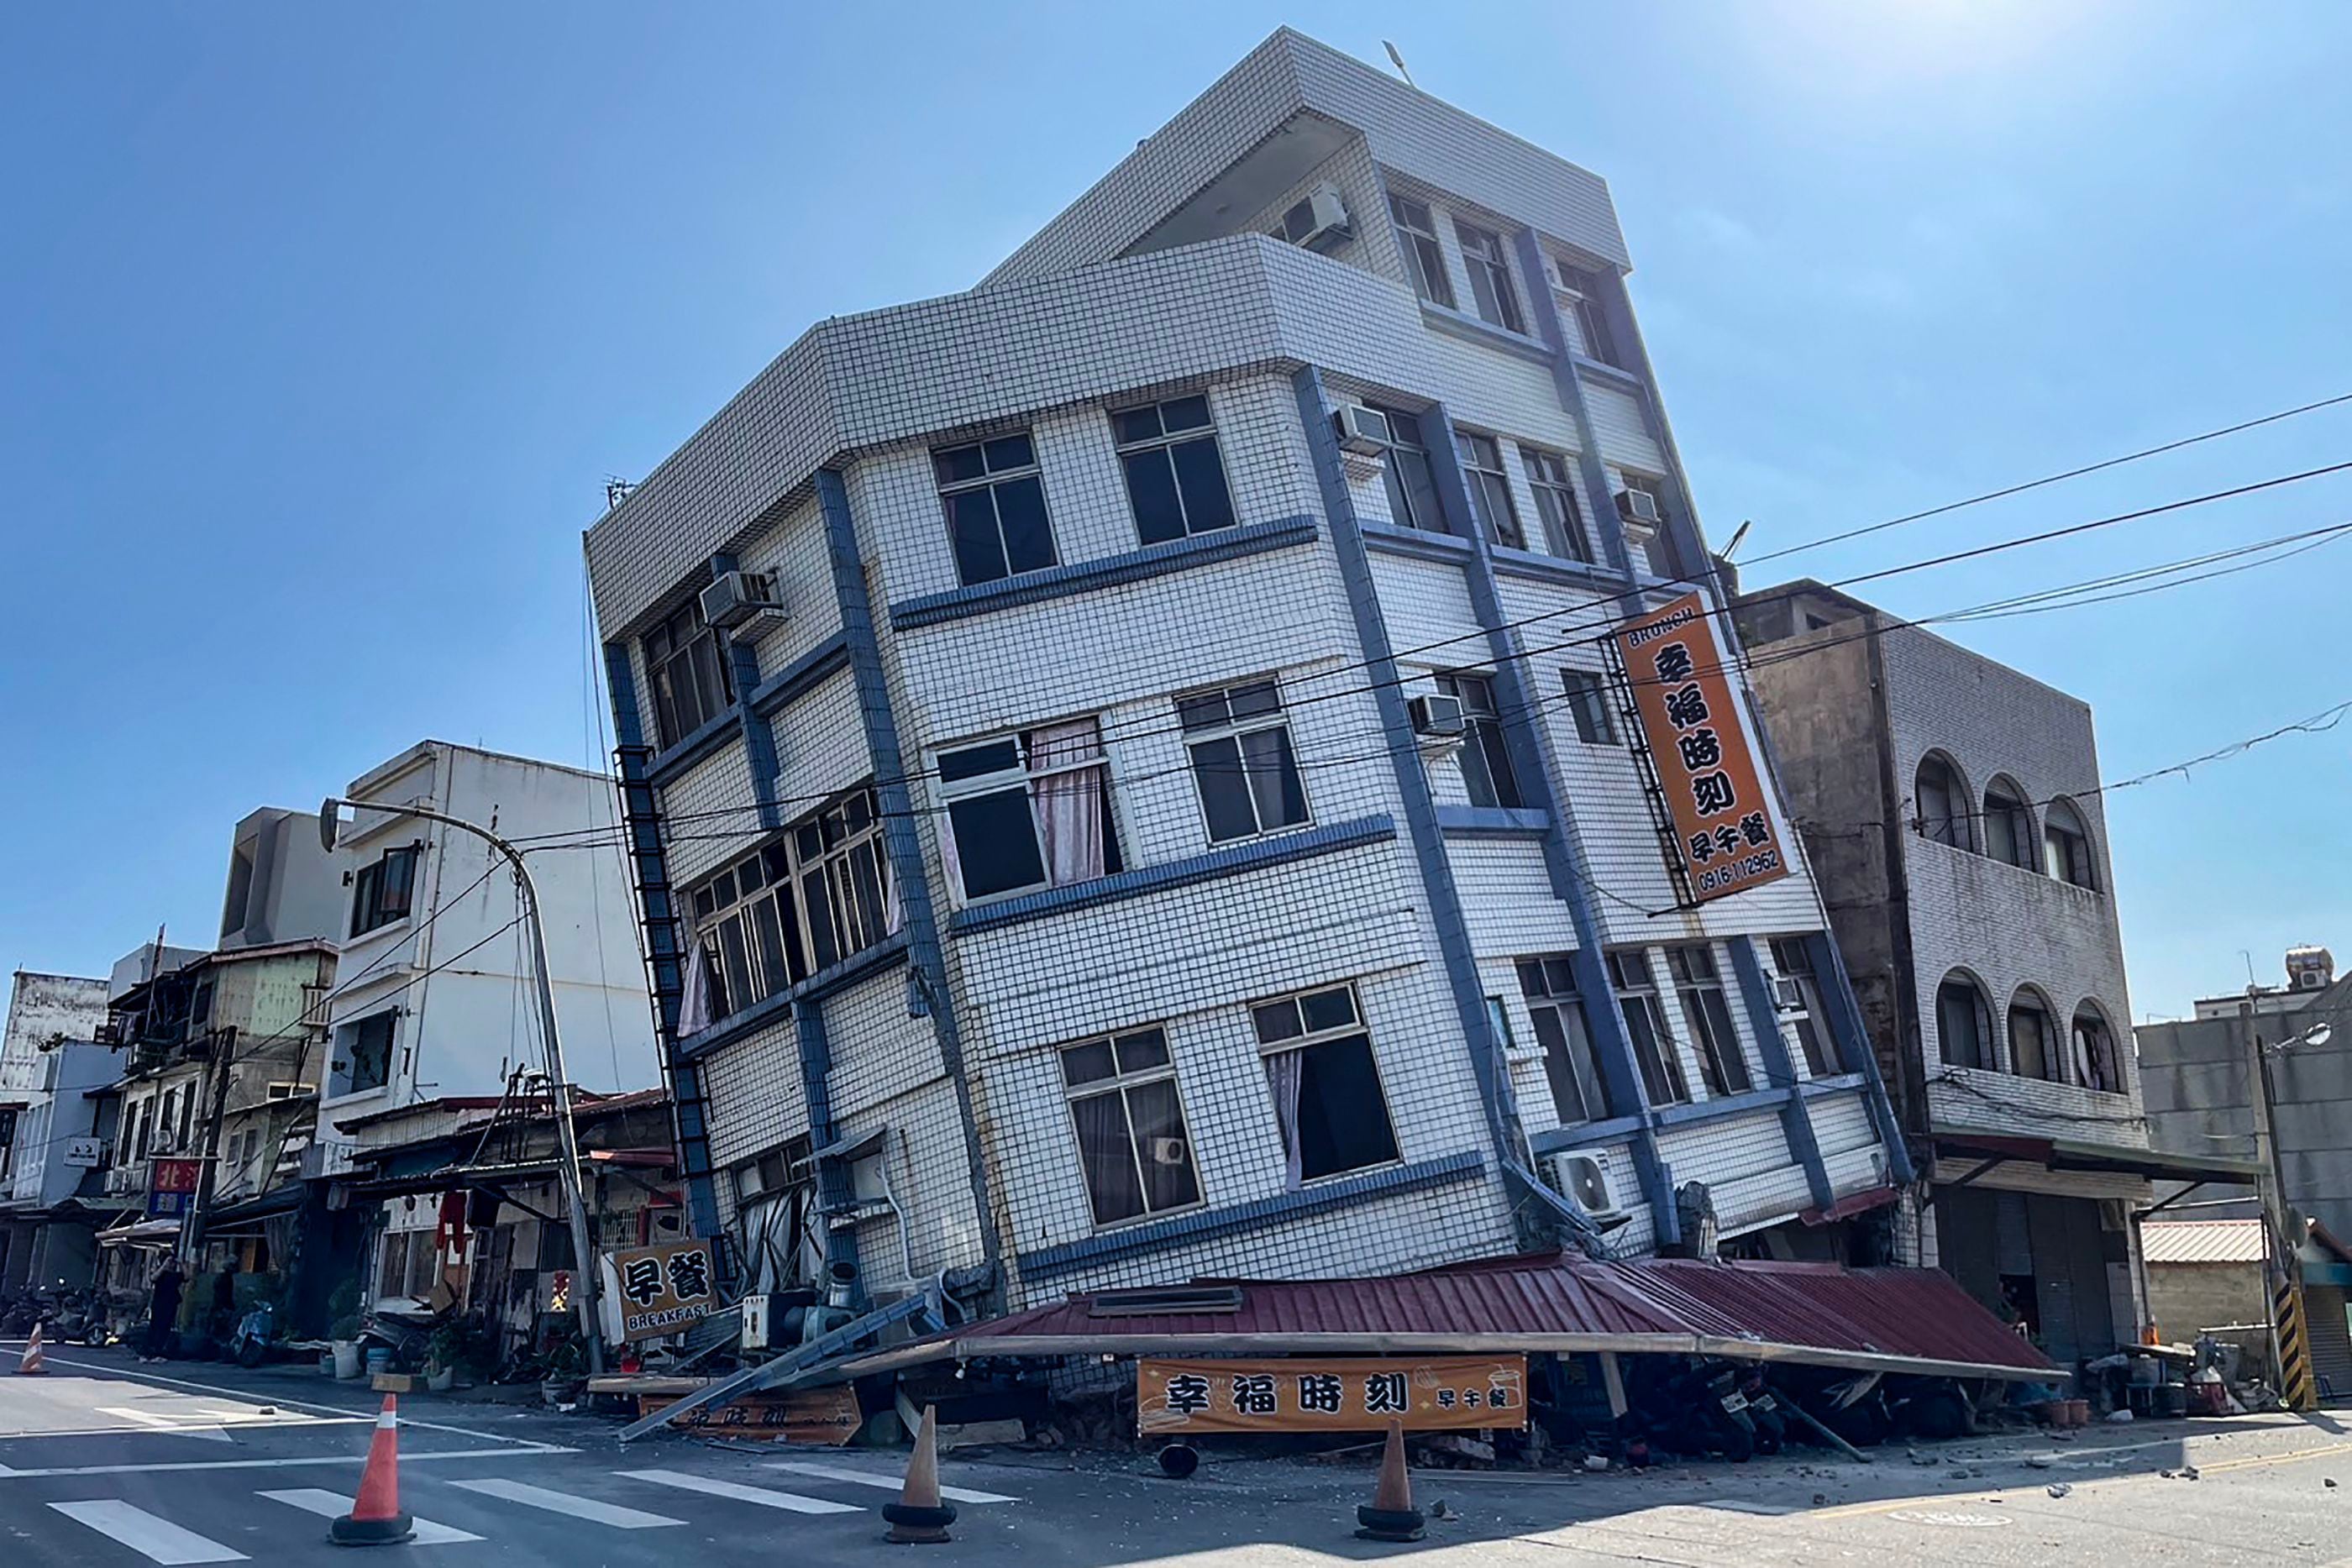 Edificios inclinados apunto de derrumbarse tras terremoto de magnitud 7.4 en Taiwán